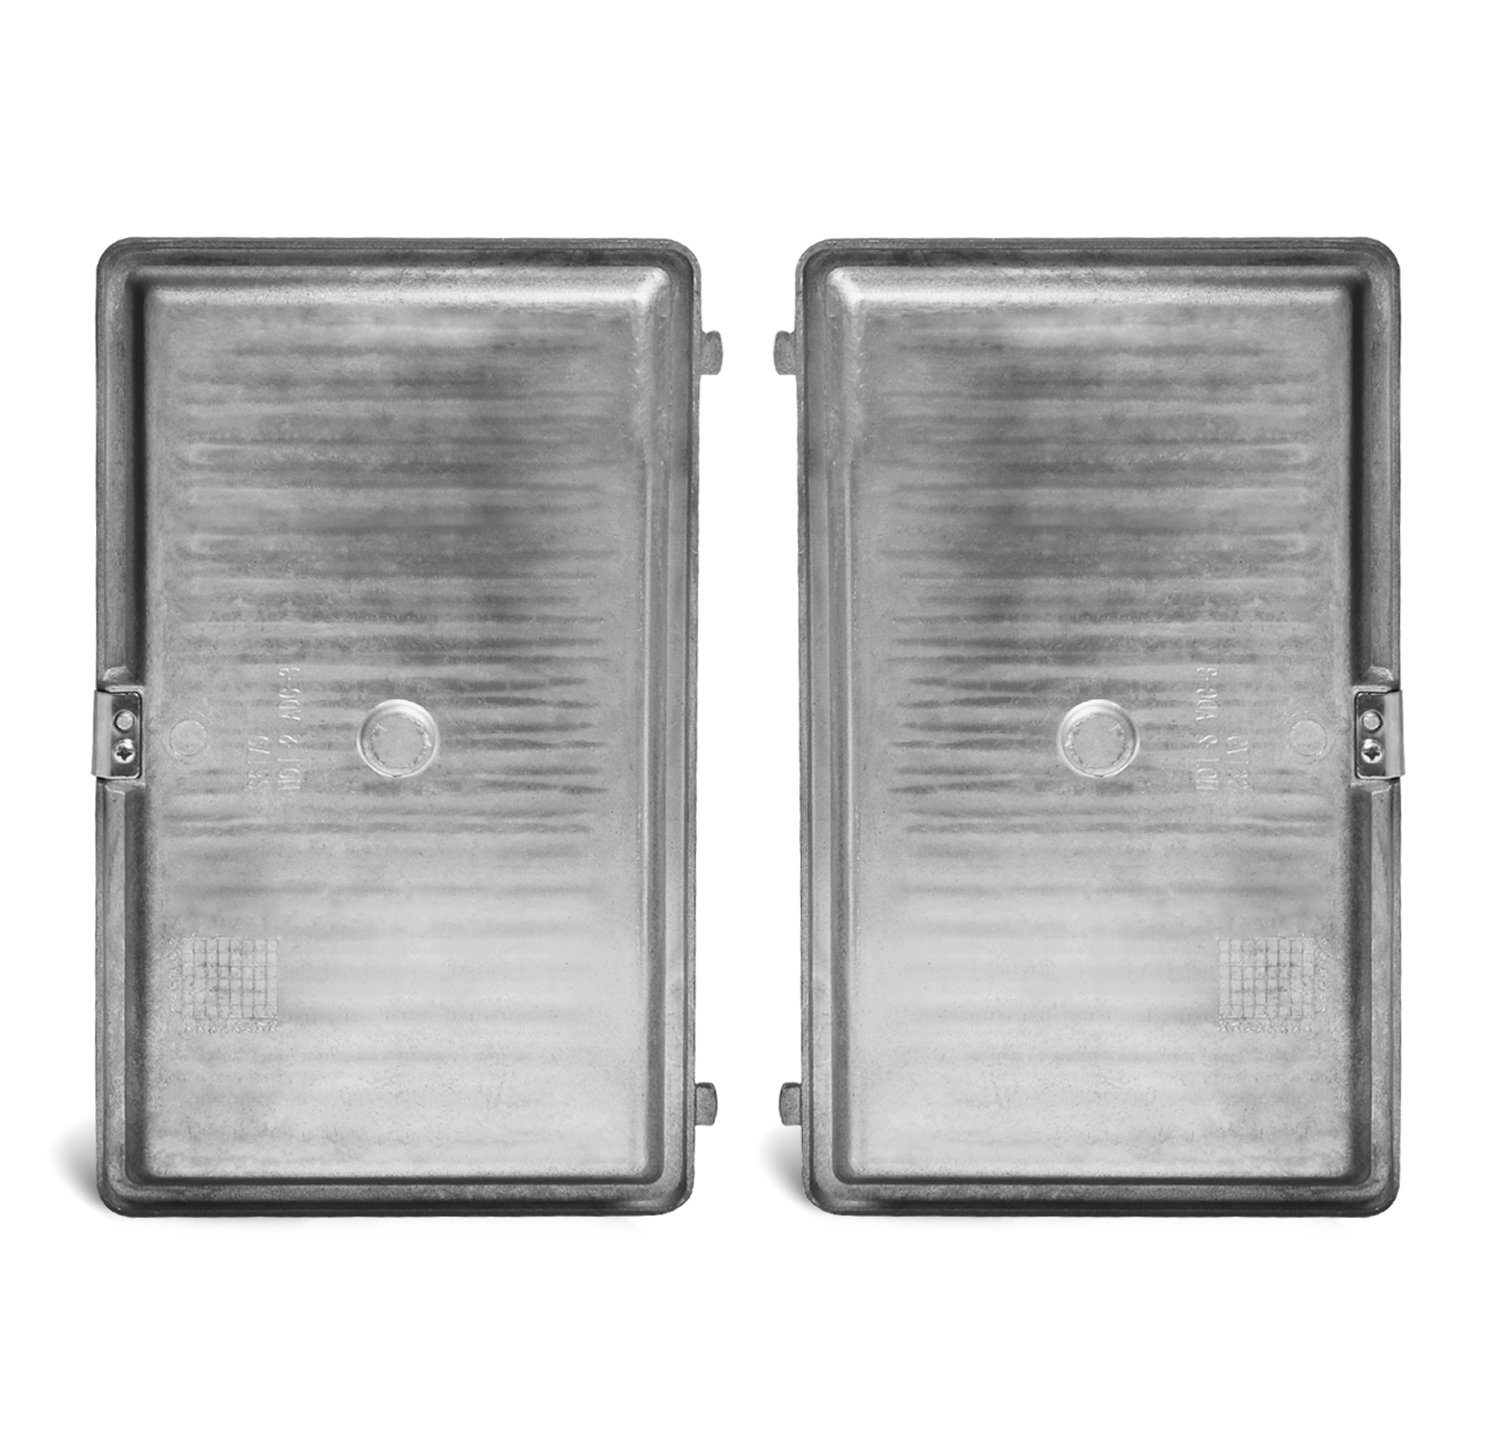 Waffeleisen, Grillplattenaufsatz Waffeleisen für Tefal Platten für Grill + XA800312 Pannini Antihaftbeschichtung,